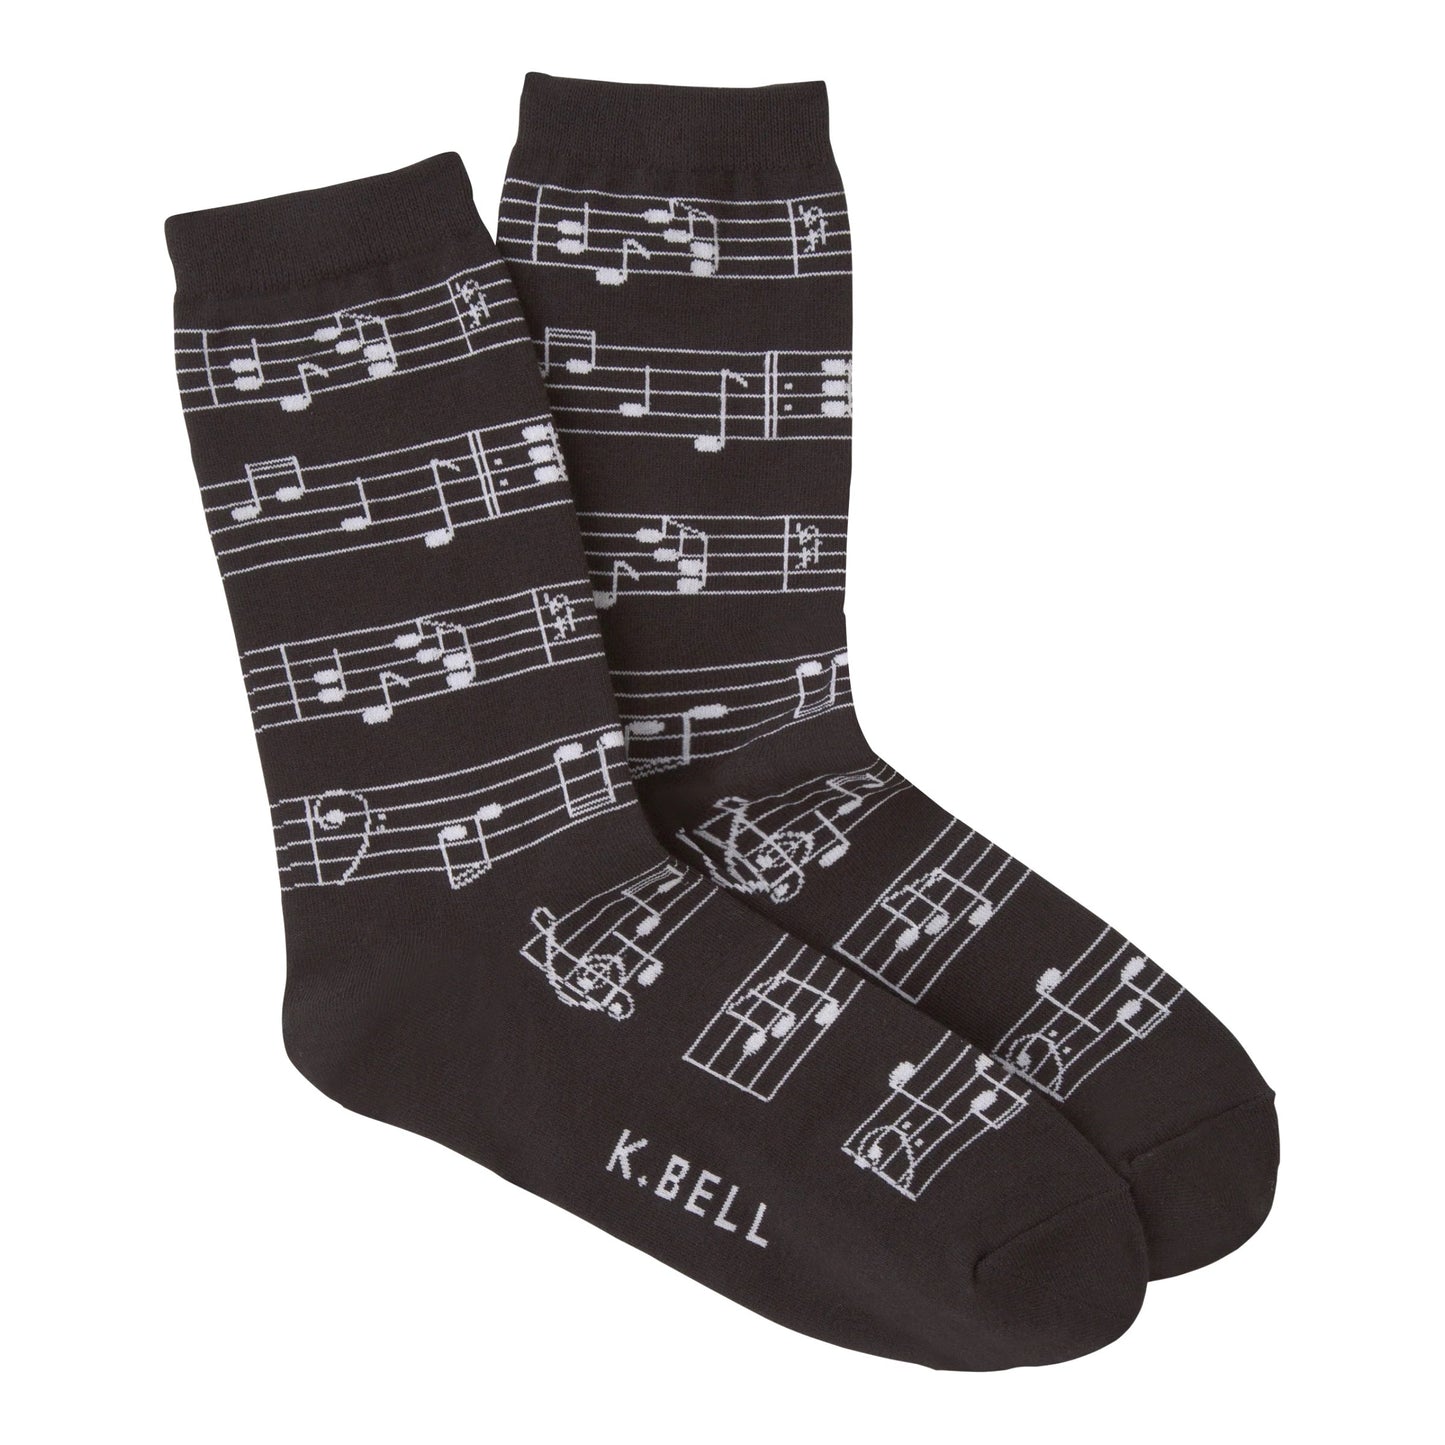 K. Bell Music Crew Socks